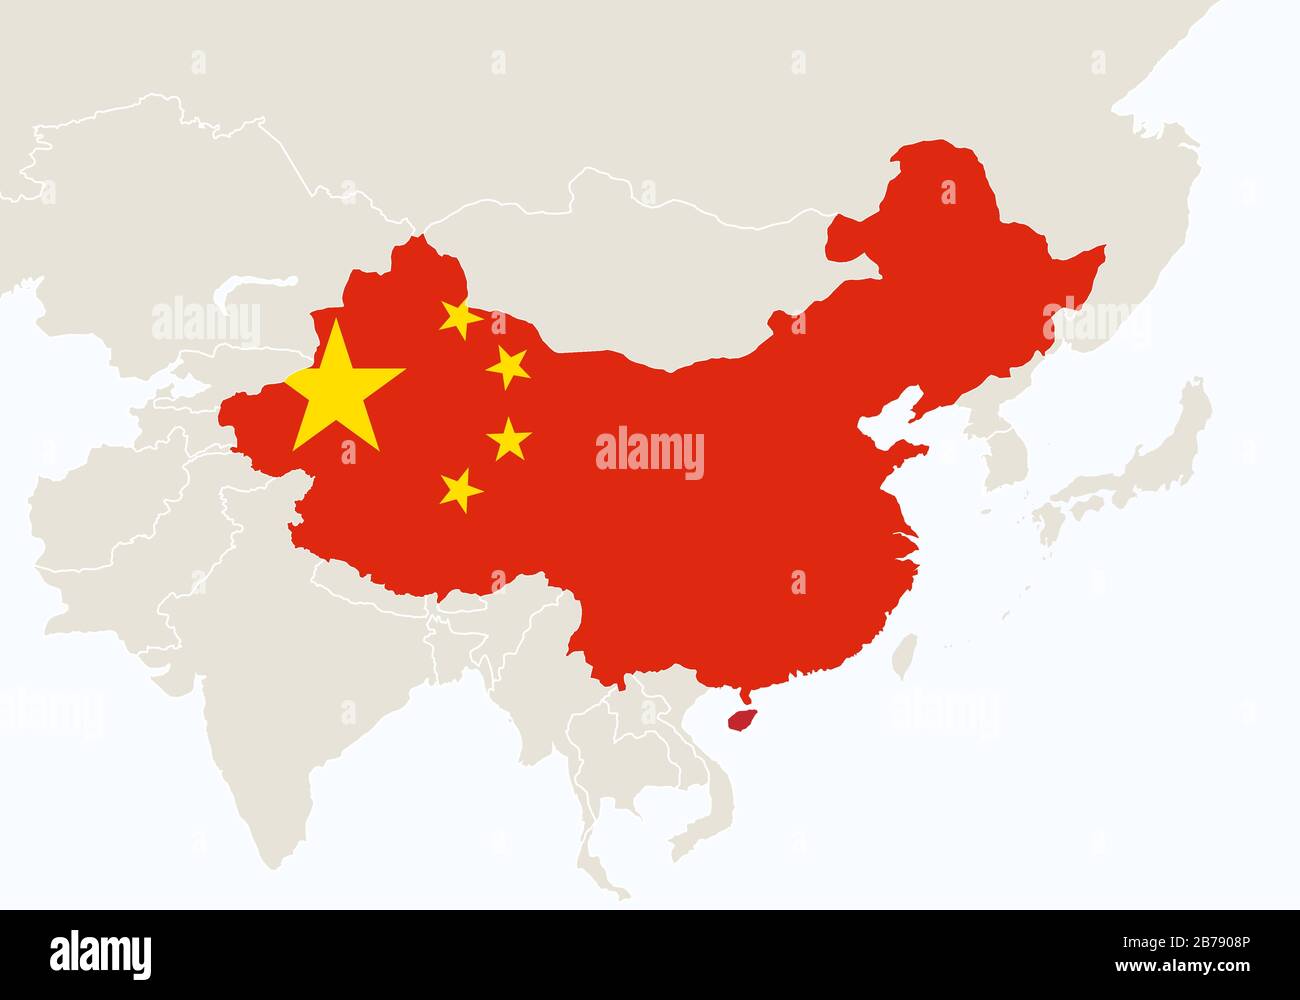 Территория китая. Красивая карта Китая. Карта Китая без фона. Китай на карте выделен. Карта Китая рисунок.